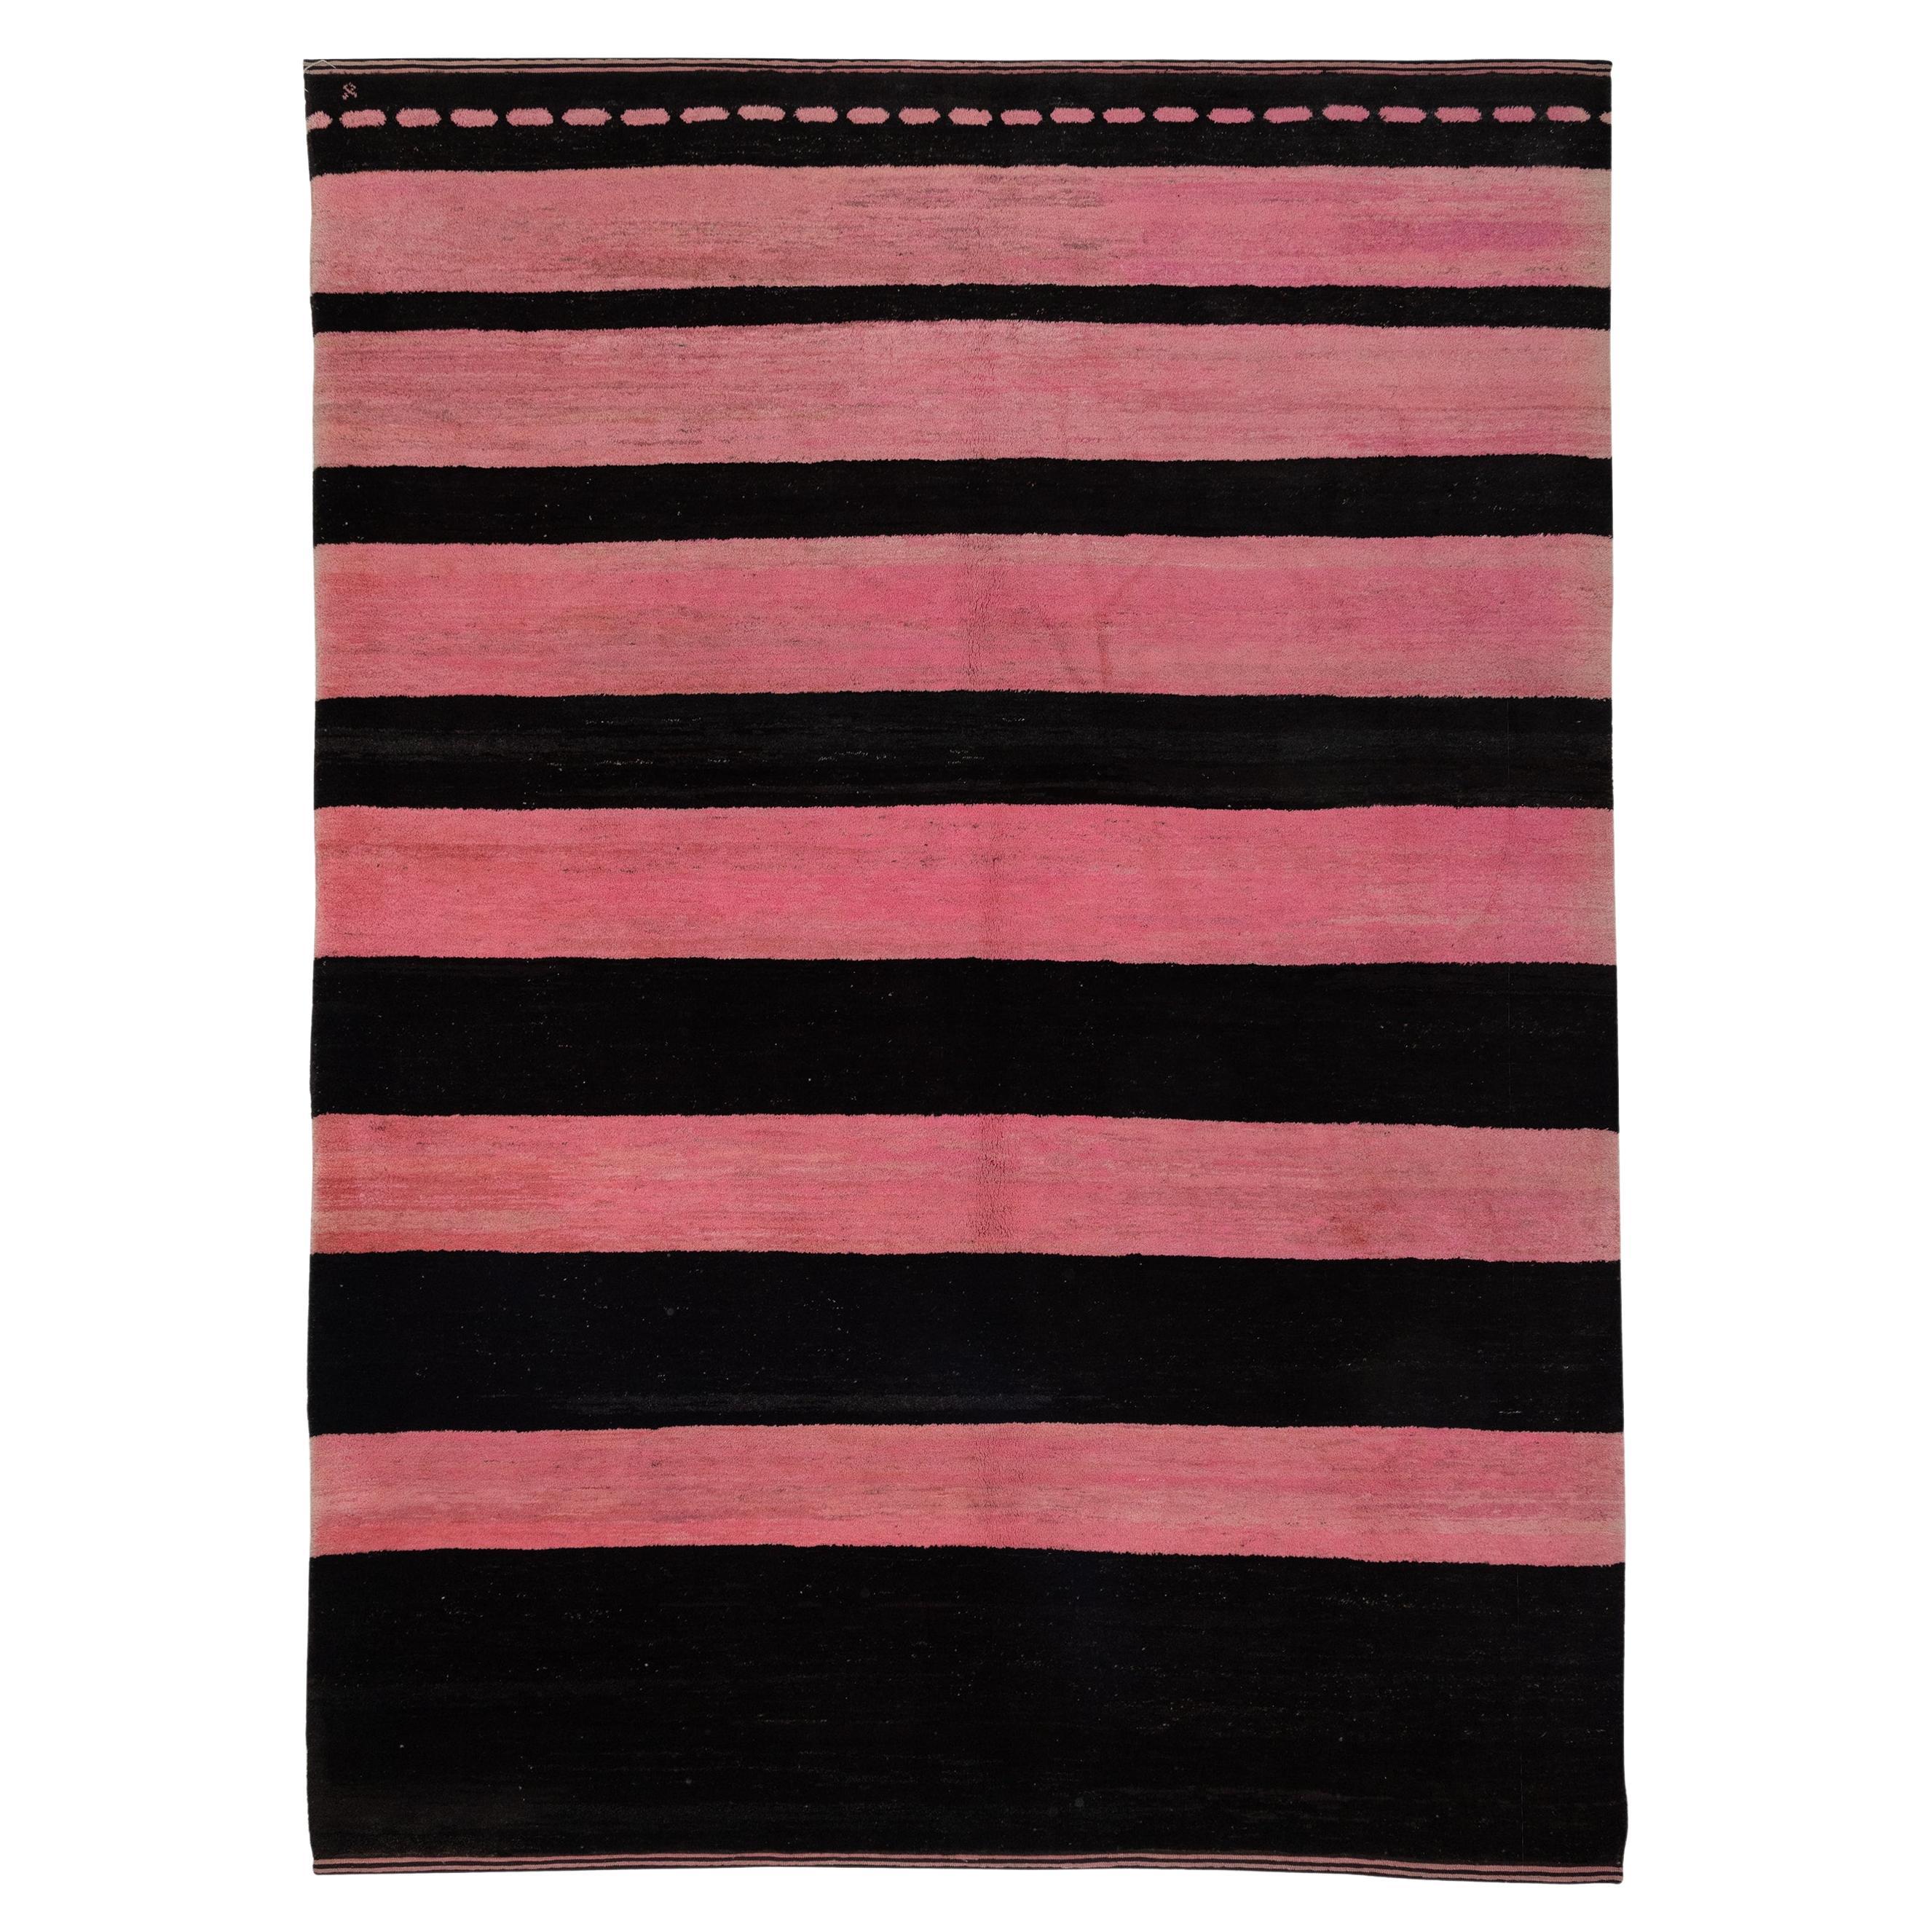 Old Yarn Rug Pink Black Striped For Sale